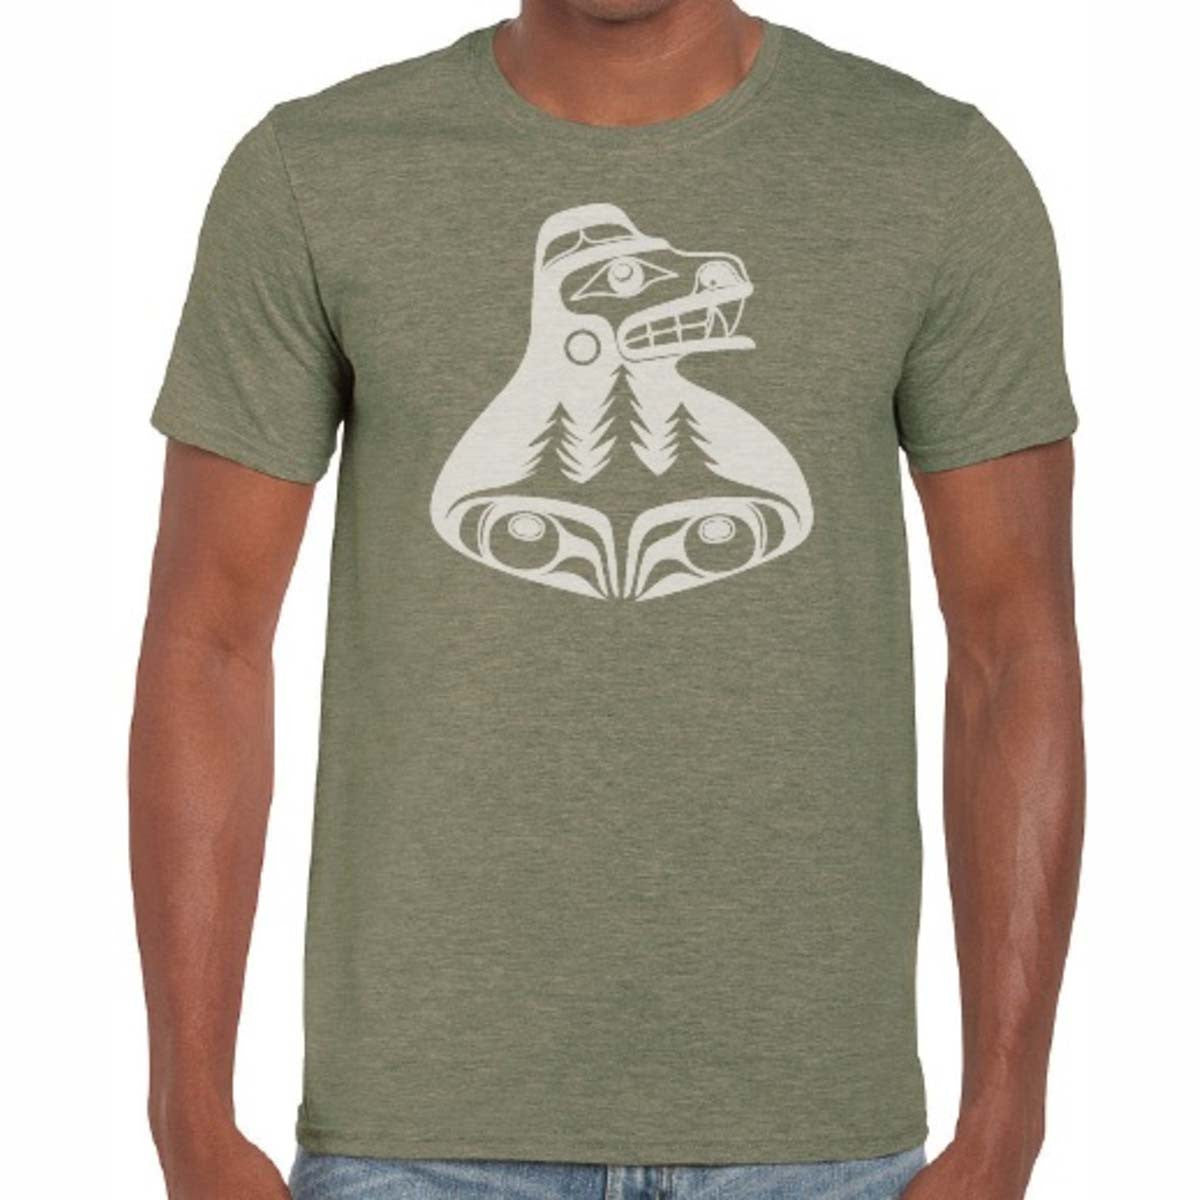 Green Cotton T-Shirt - “Bear The Tree Hugger” by Allan Weir